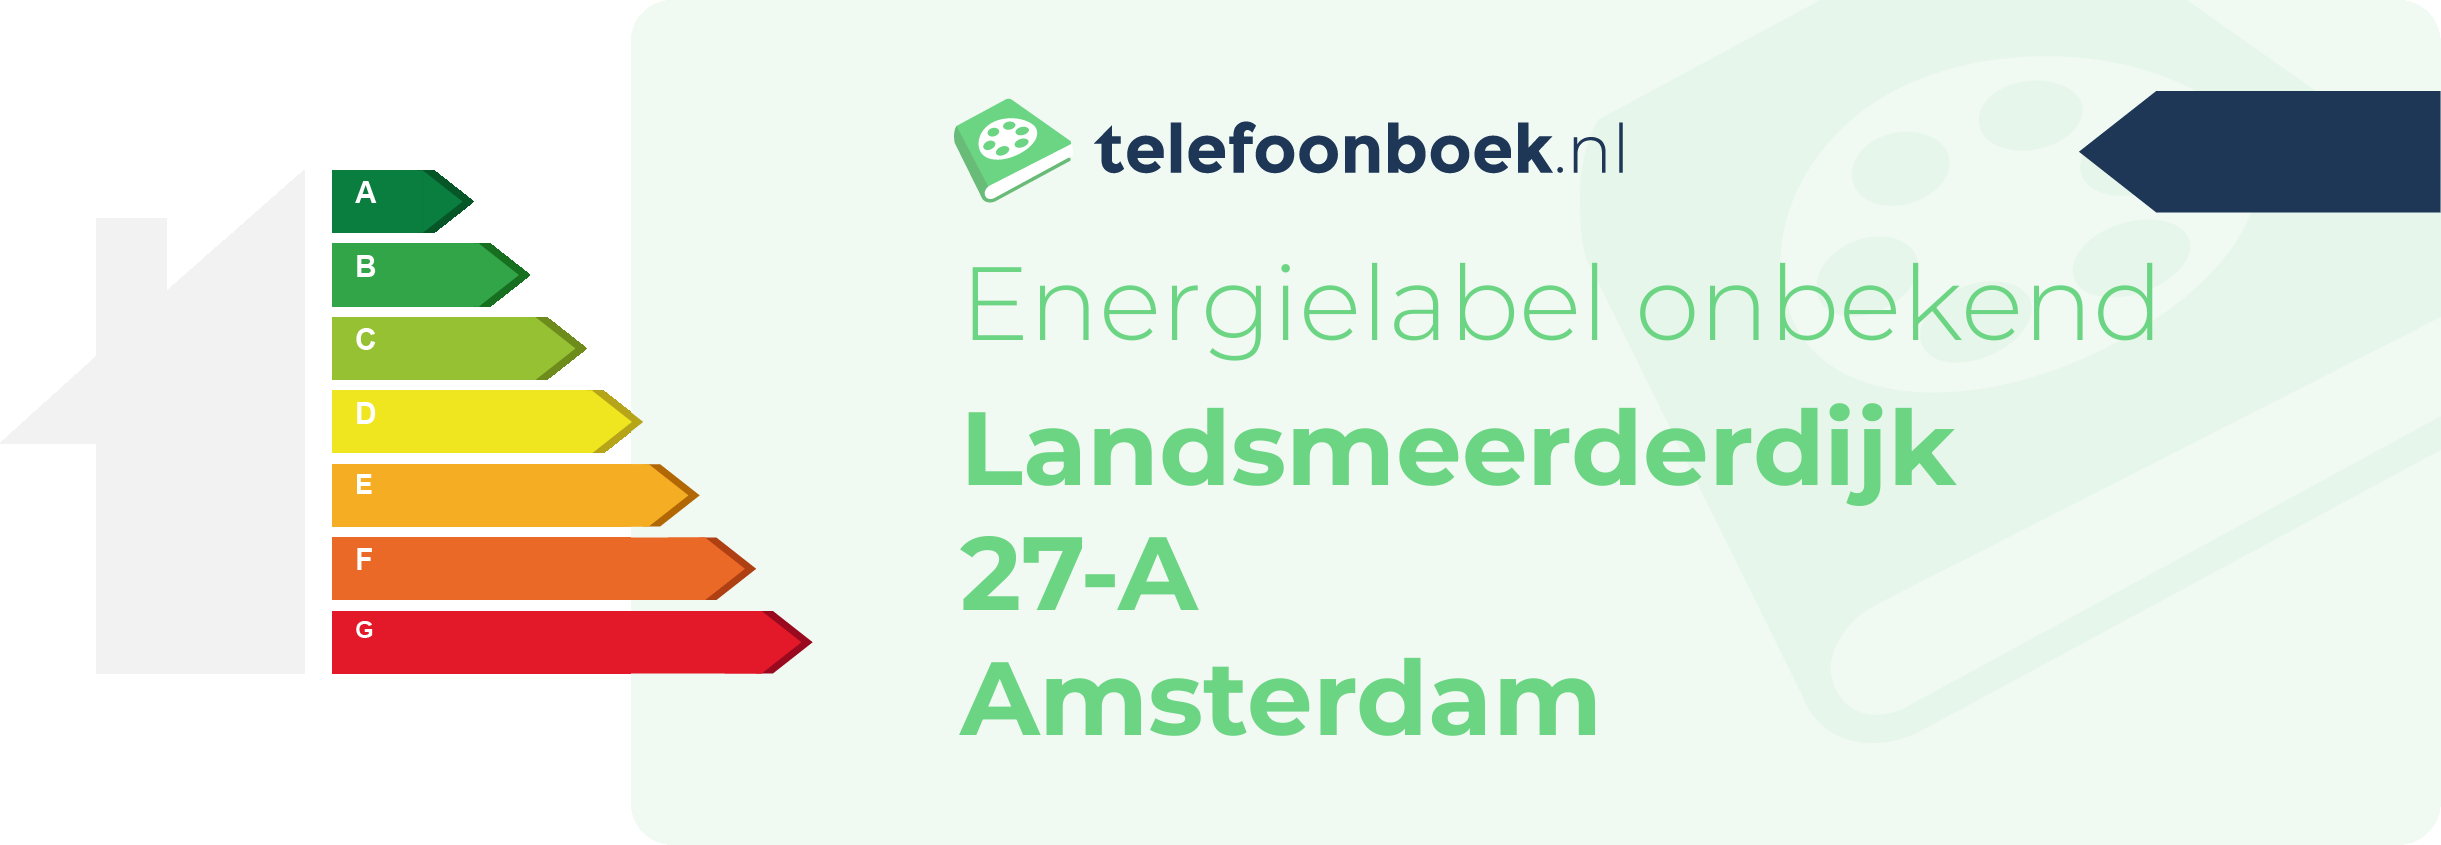 Energielabel Landsmeerderdijk 27-A Amsterdam